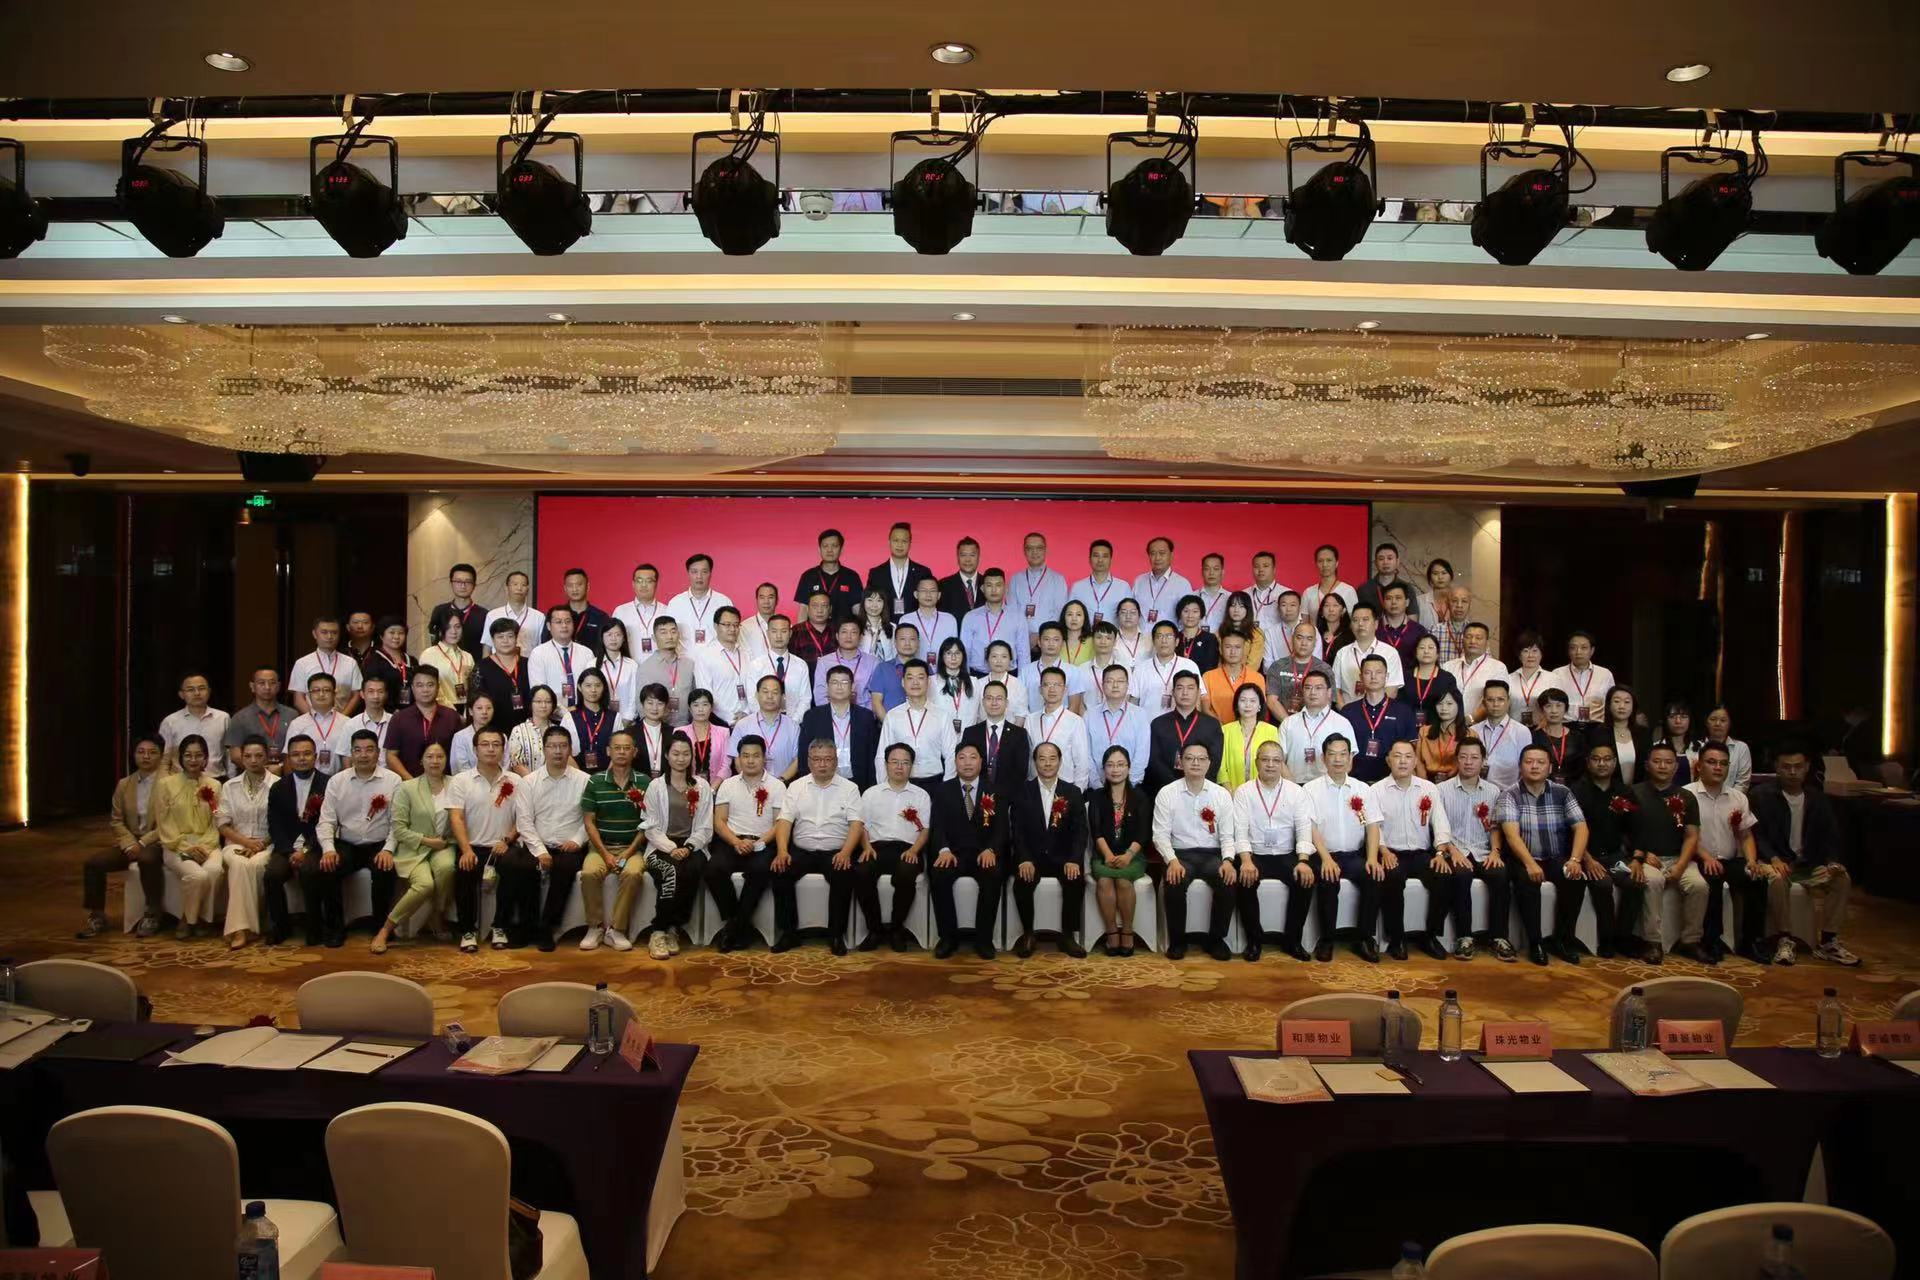 天河區物業服務行業協會成立大會成功舉行_中國網地産